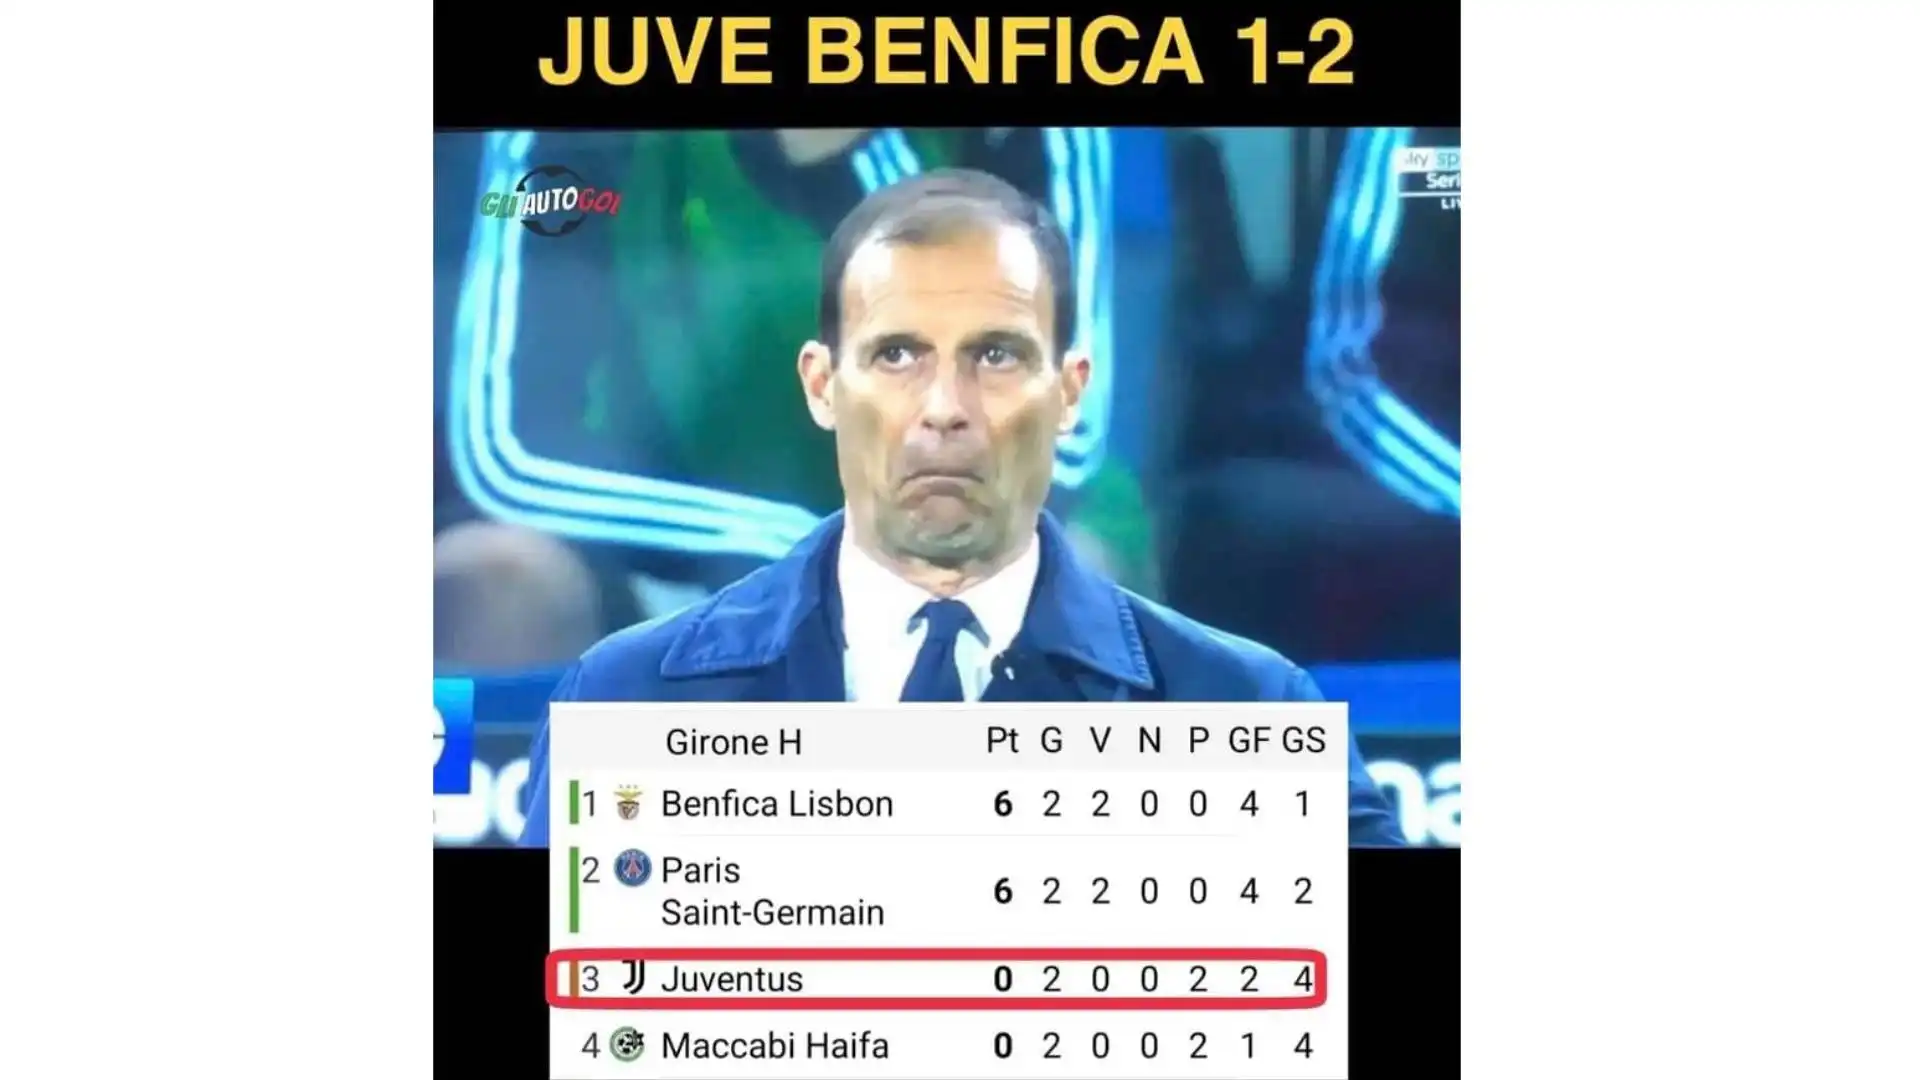 La sconfitta contro il Benfica è stata un duro colpo